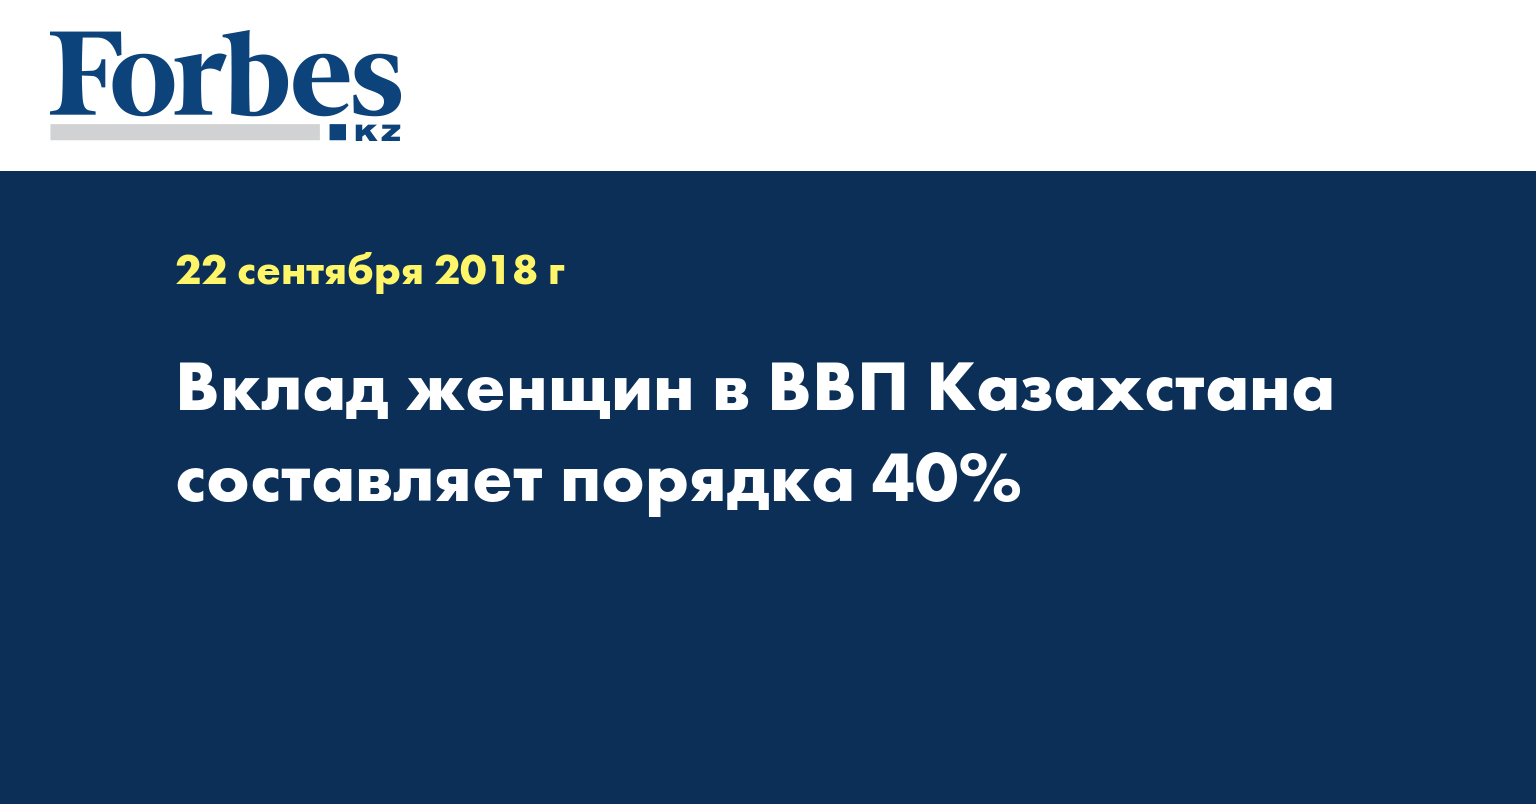 Вклад женщин в ВВП Казахстана составляет порядка 40% 